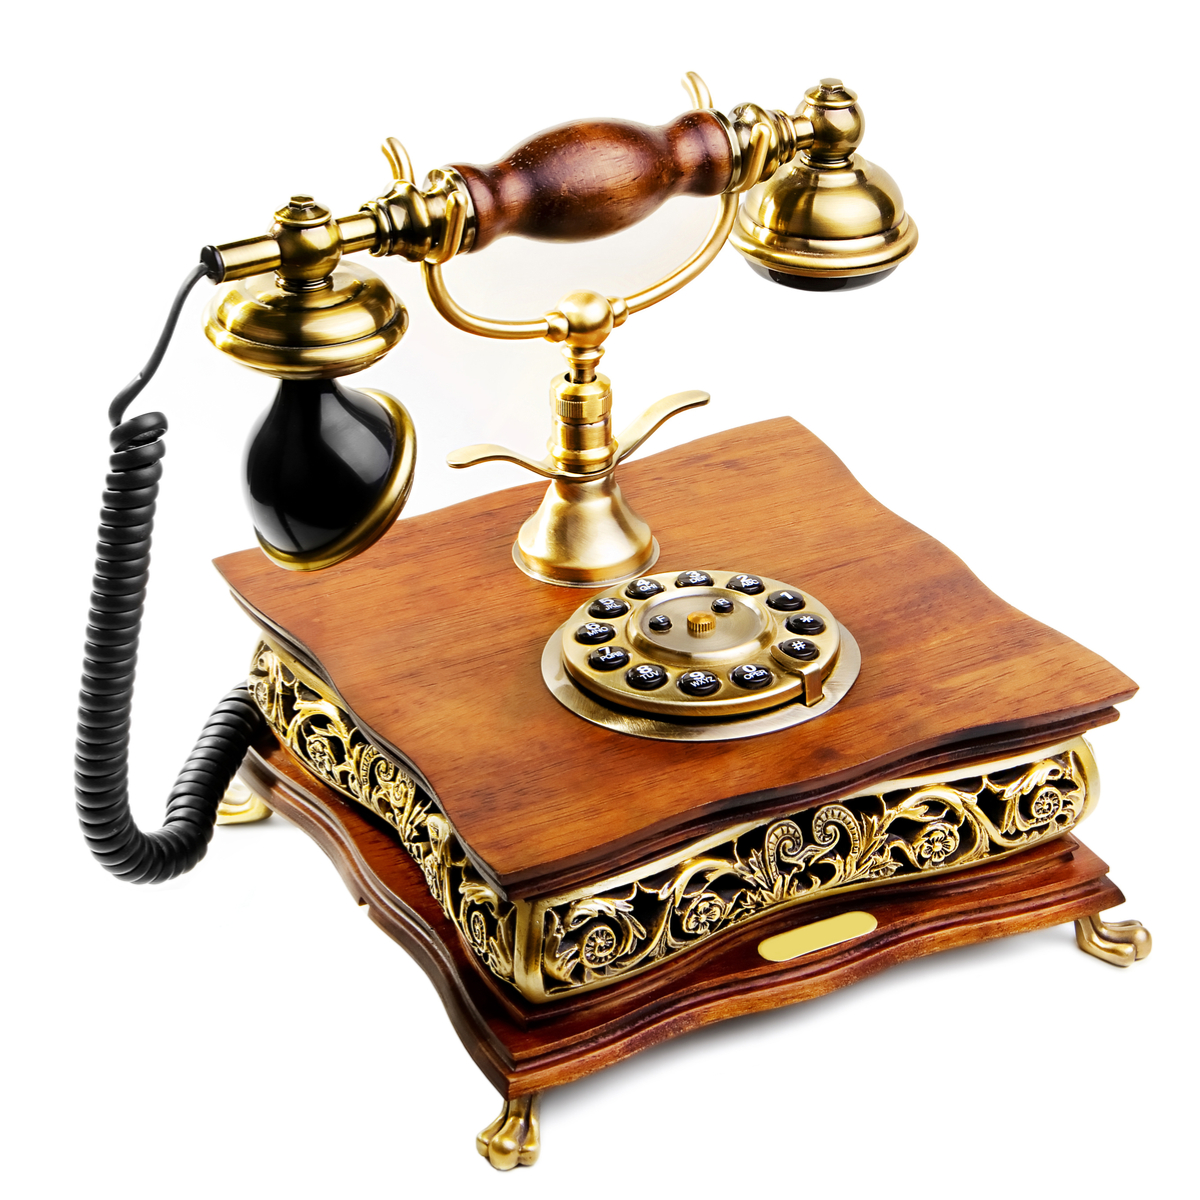 Teléfono vintage en un estilo retro de decoración